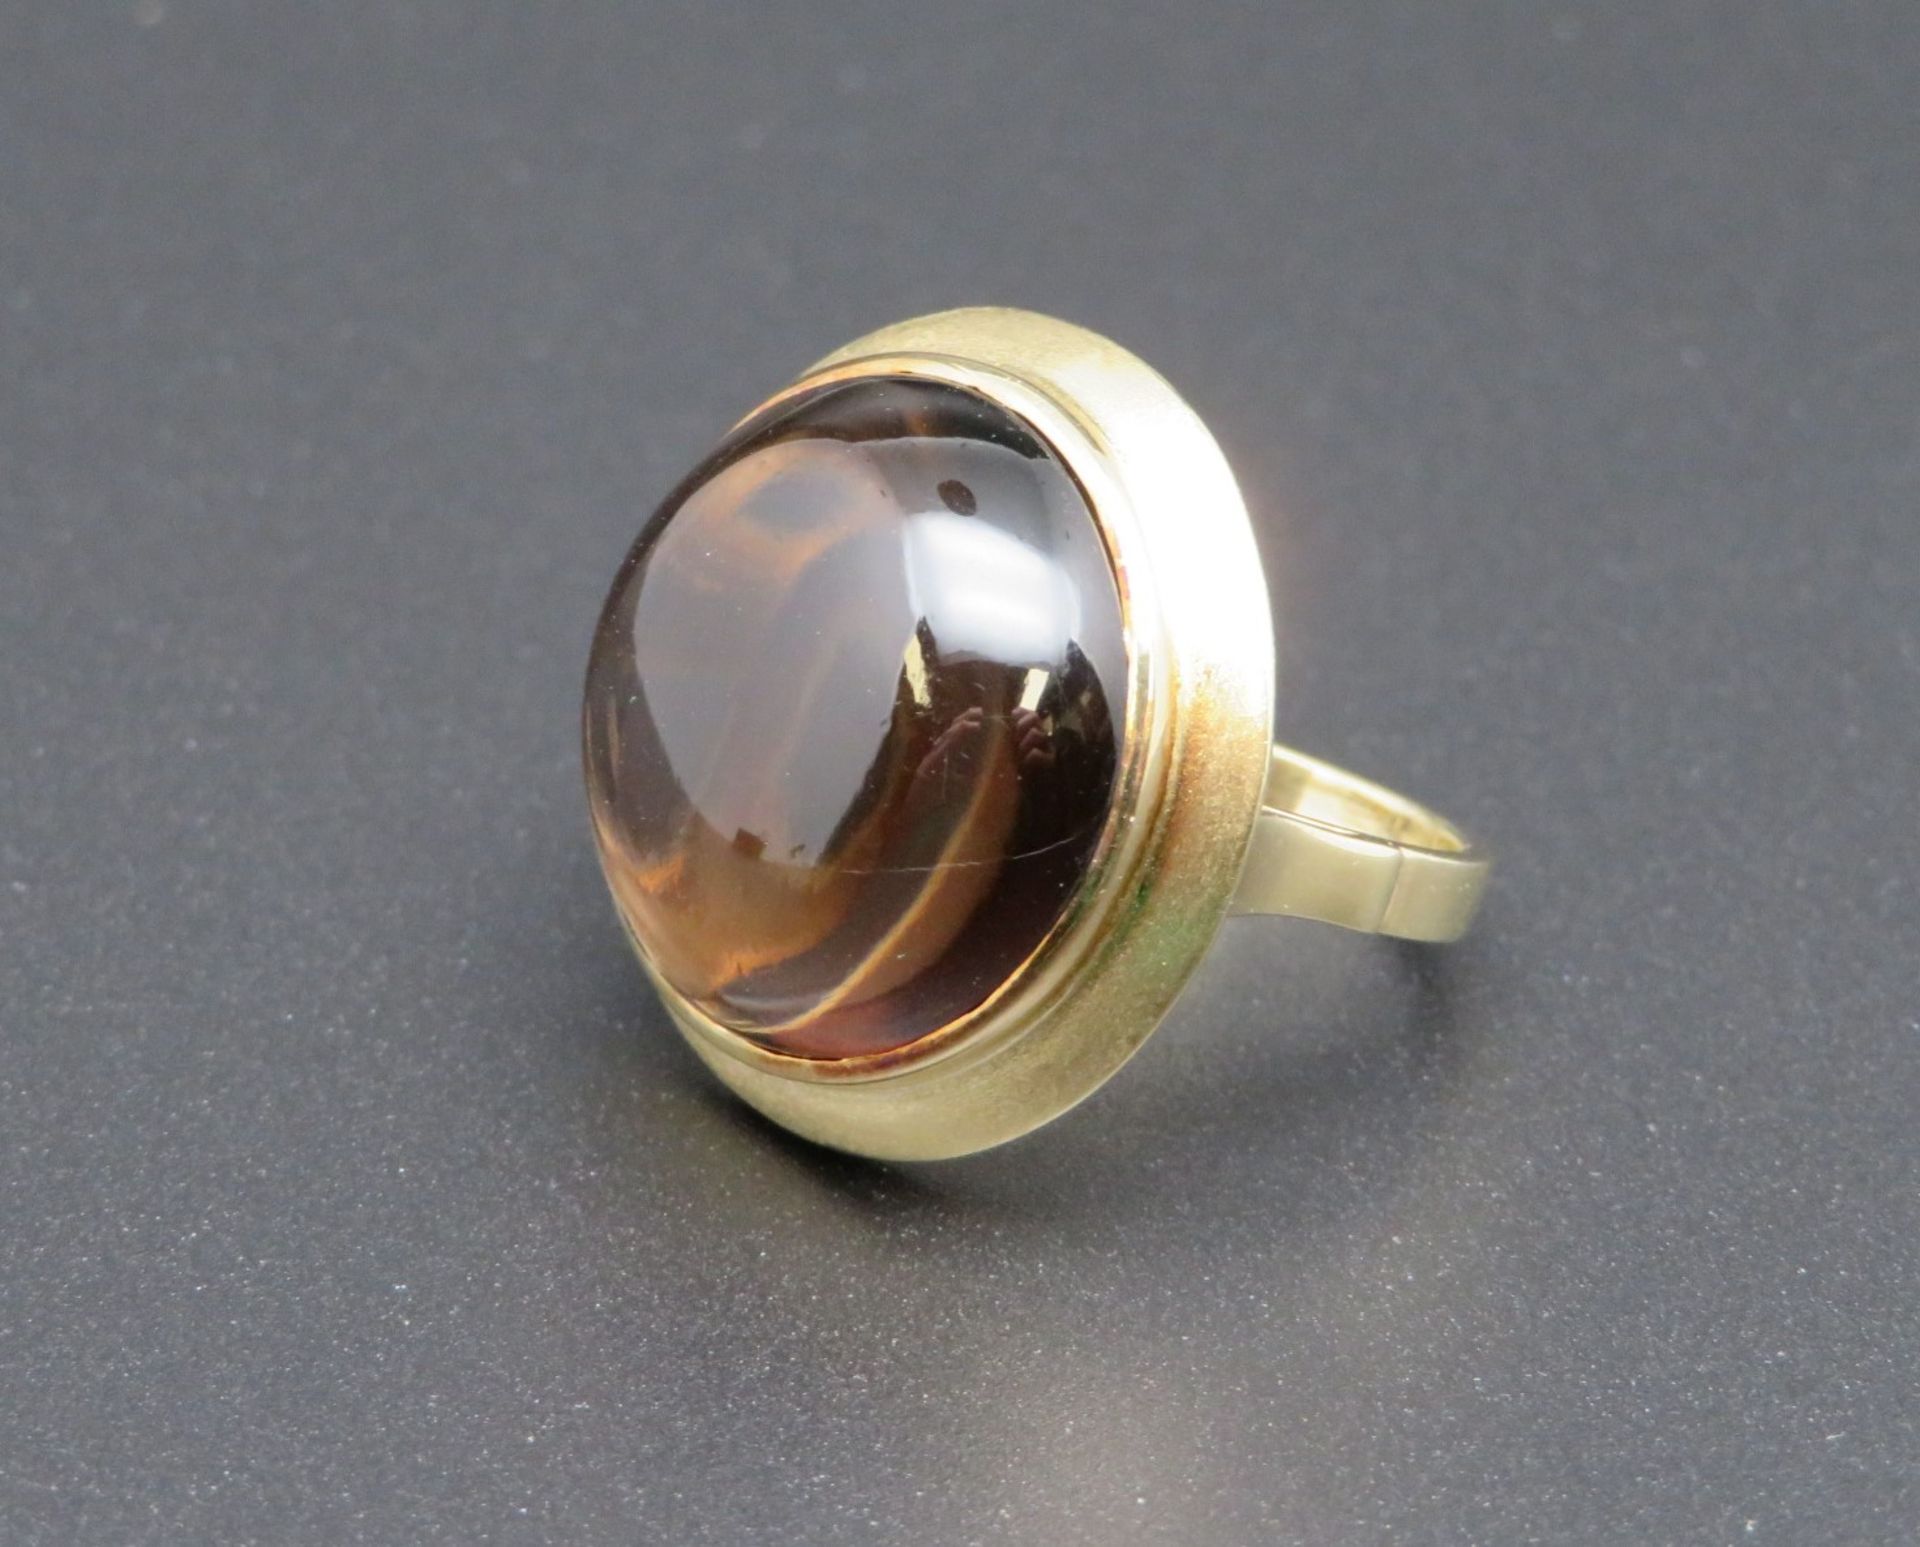 Designer-Ring mit großem Rauchquarz-Cabochon, 585er Gelbgold, gepunzt, 8,4 g, Goldschmiedesigné "BC